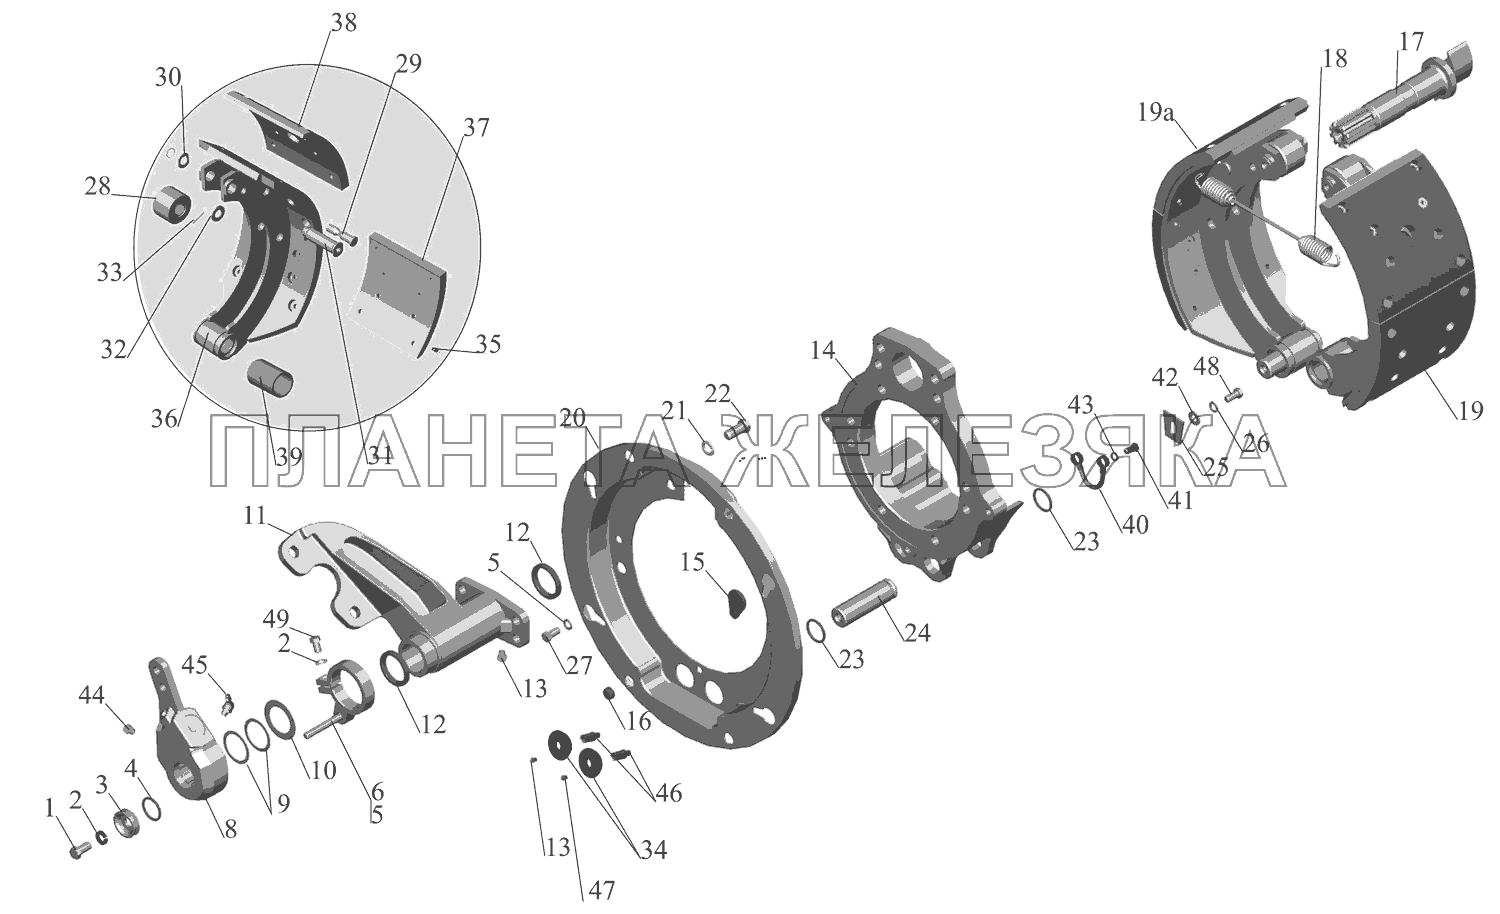 Тормозной механизм передних колес 6516-3501004 (6516-3501005) МАЗ-651669-320 (340)